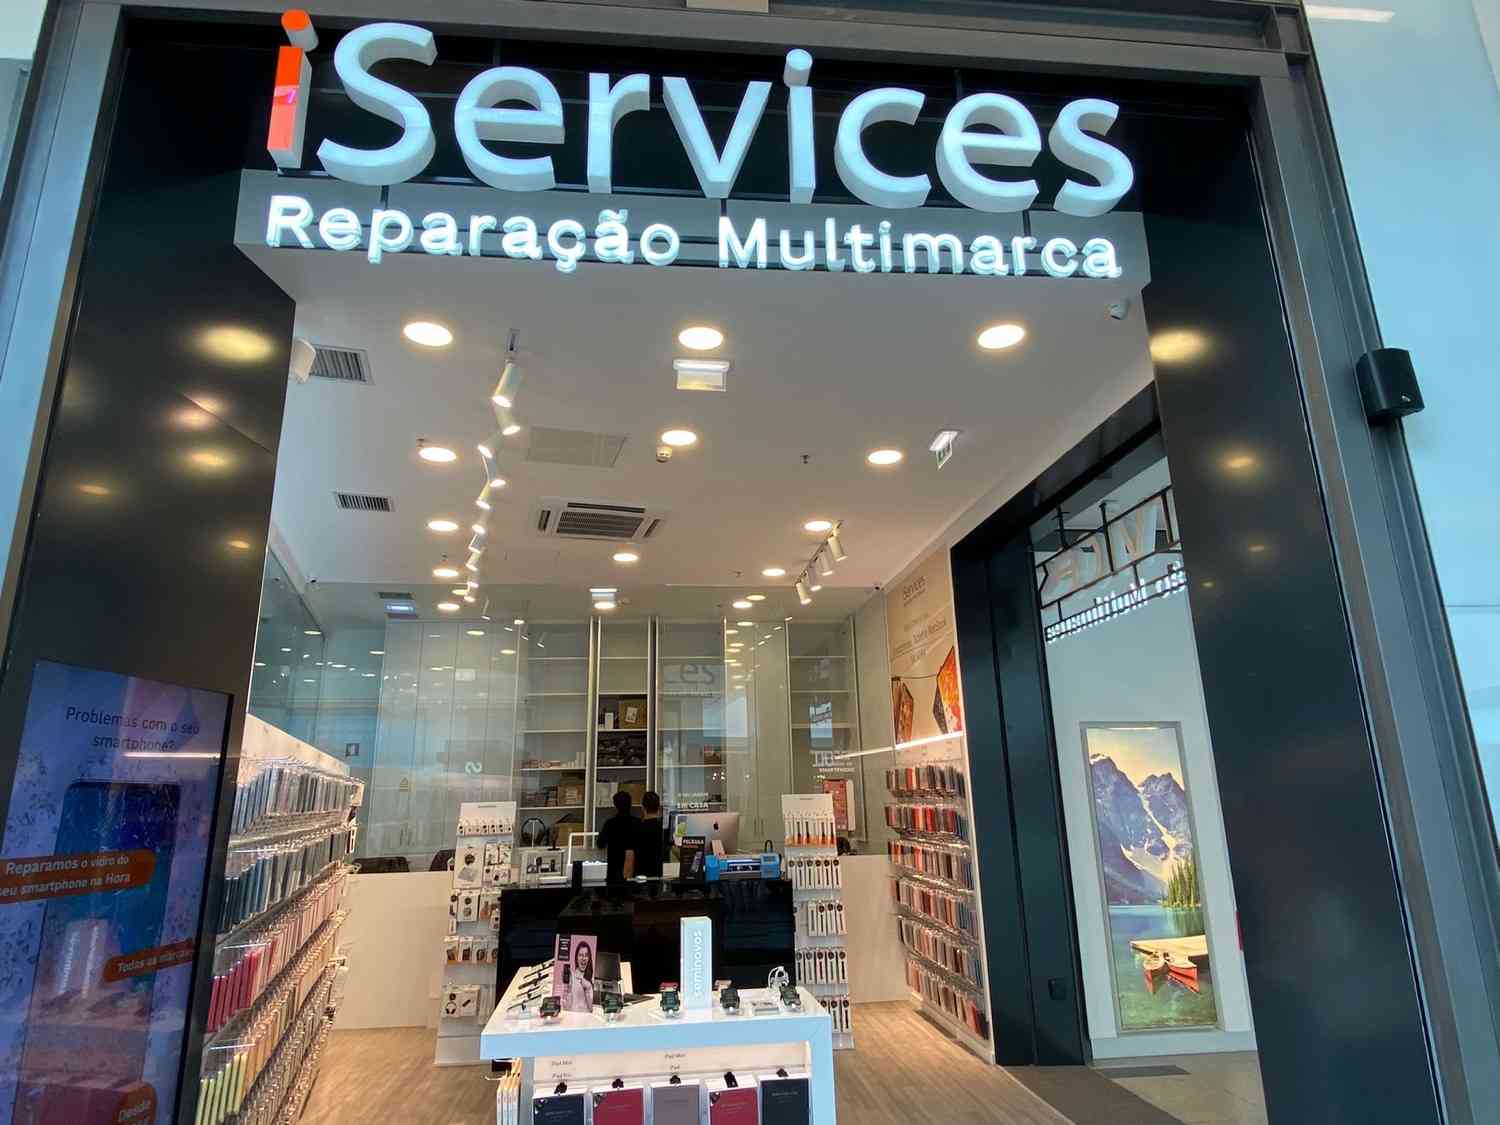 Nous sommes arrivés à notre centre commercial&nbsp;! Nous avons ouvert iServices Vila Real